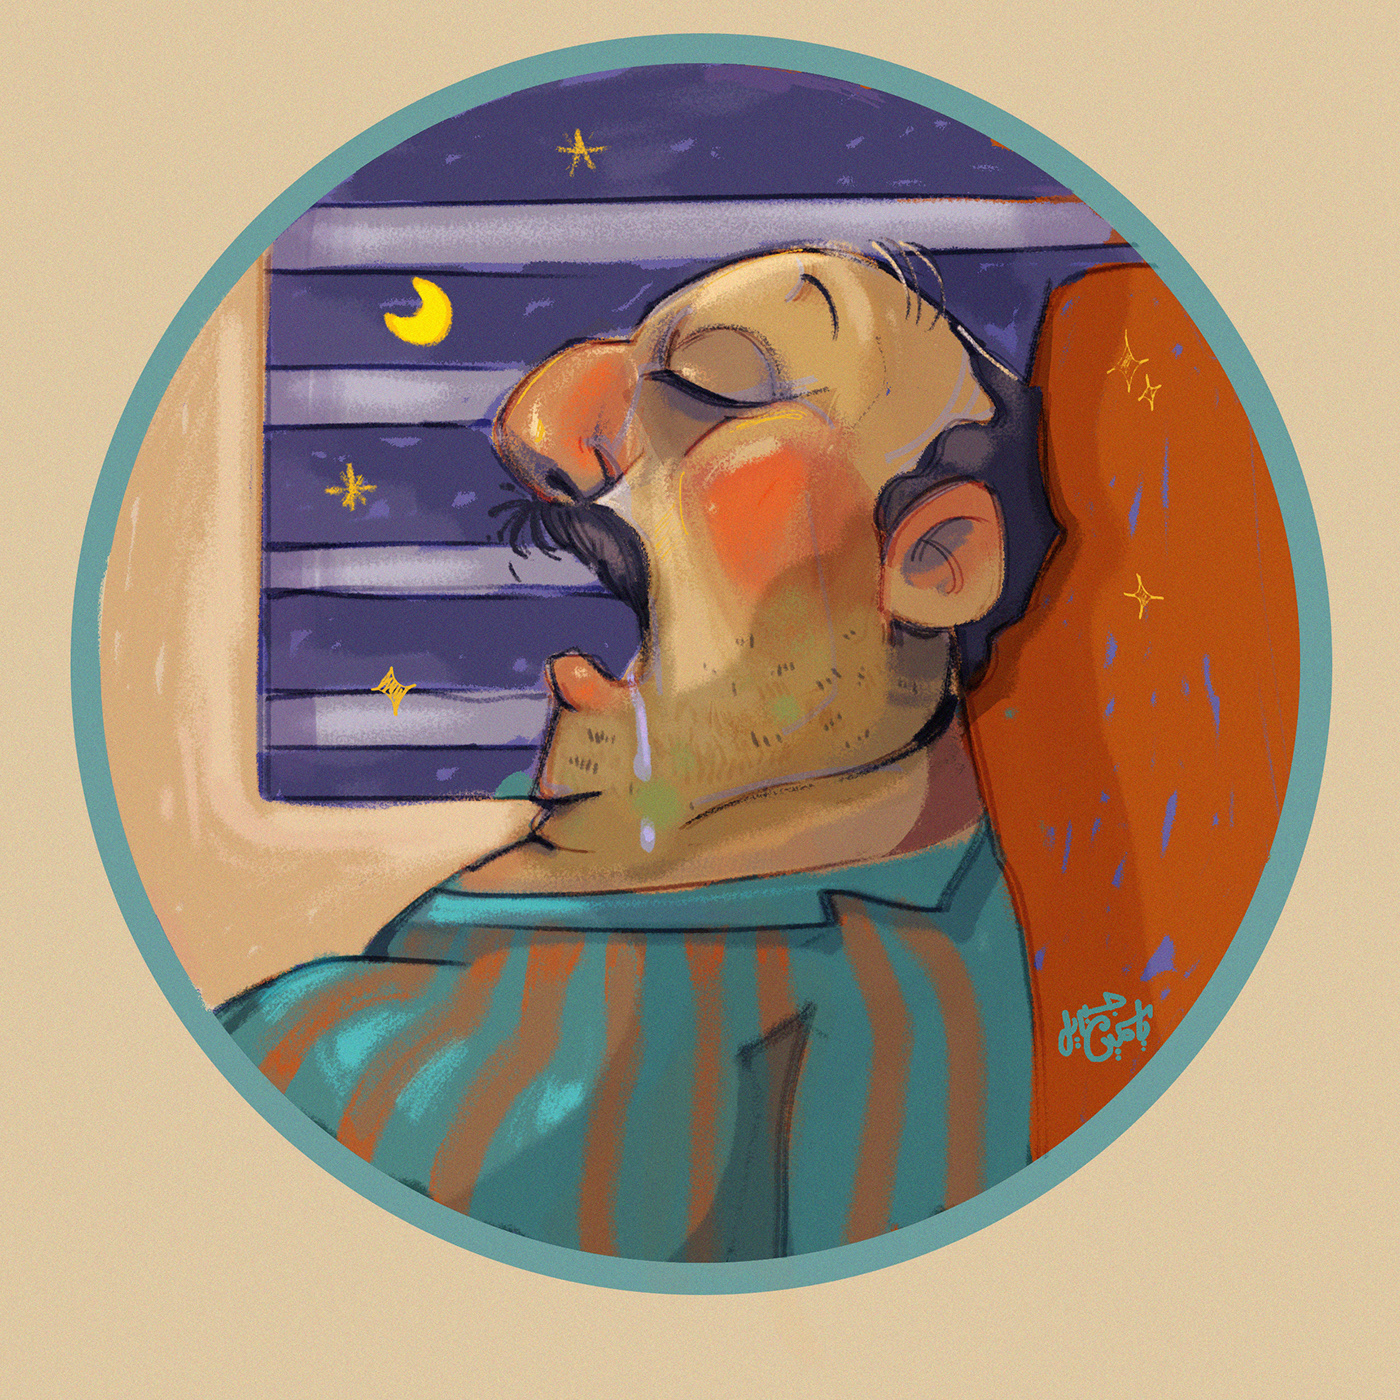 sticker Digital Art  Character design  digital illustration cartoon artwork sketch artist sleepy